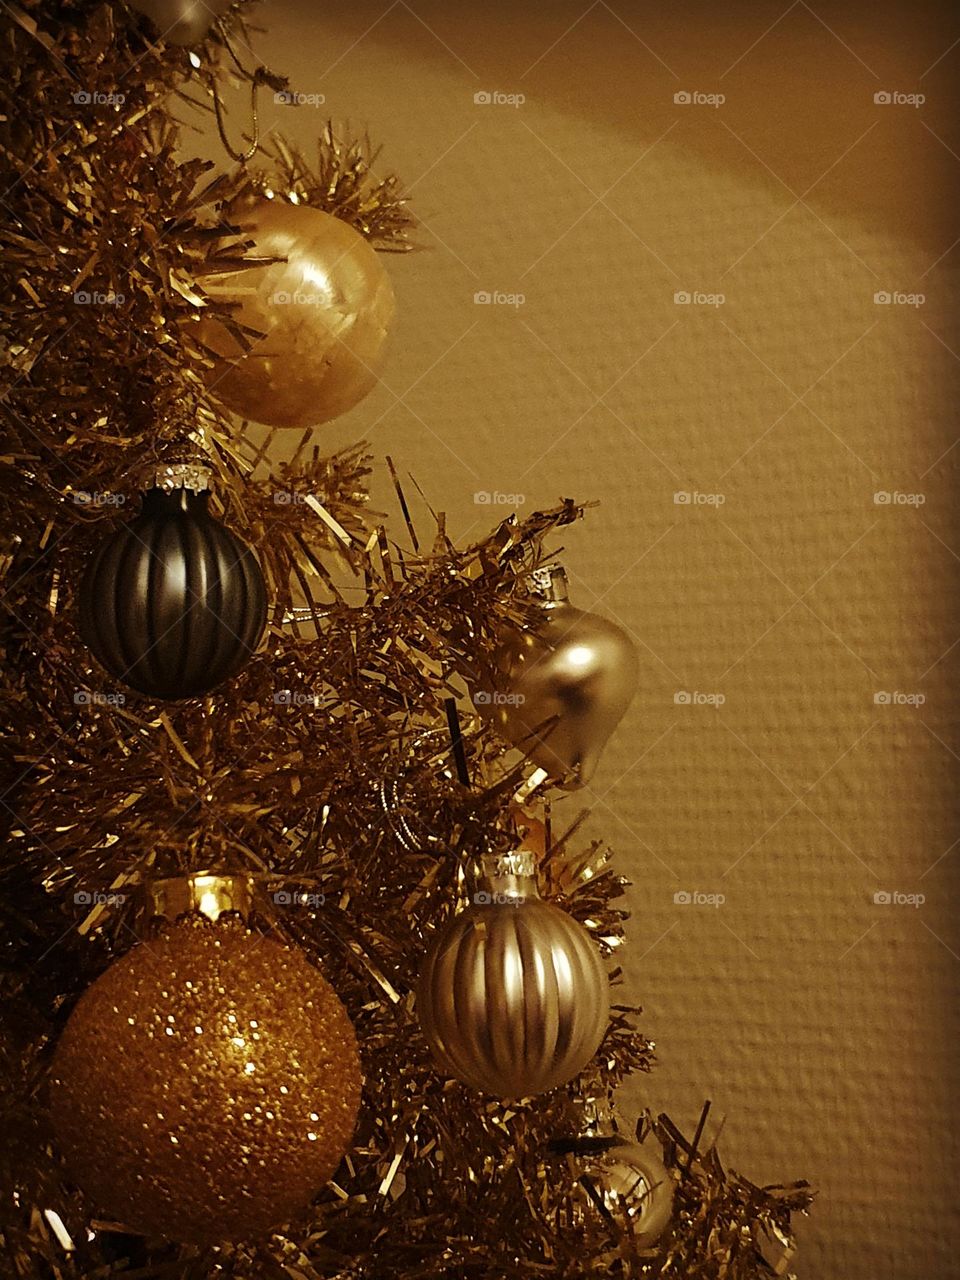 Christmas tree with balls